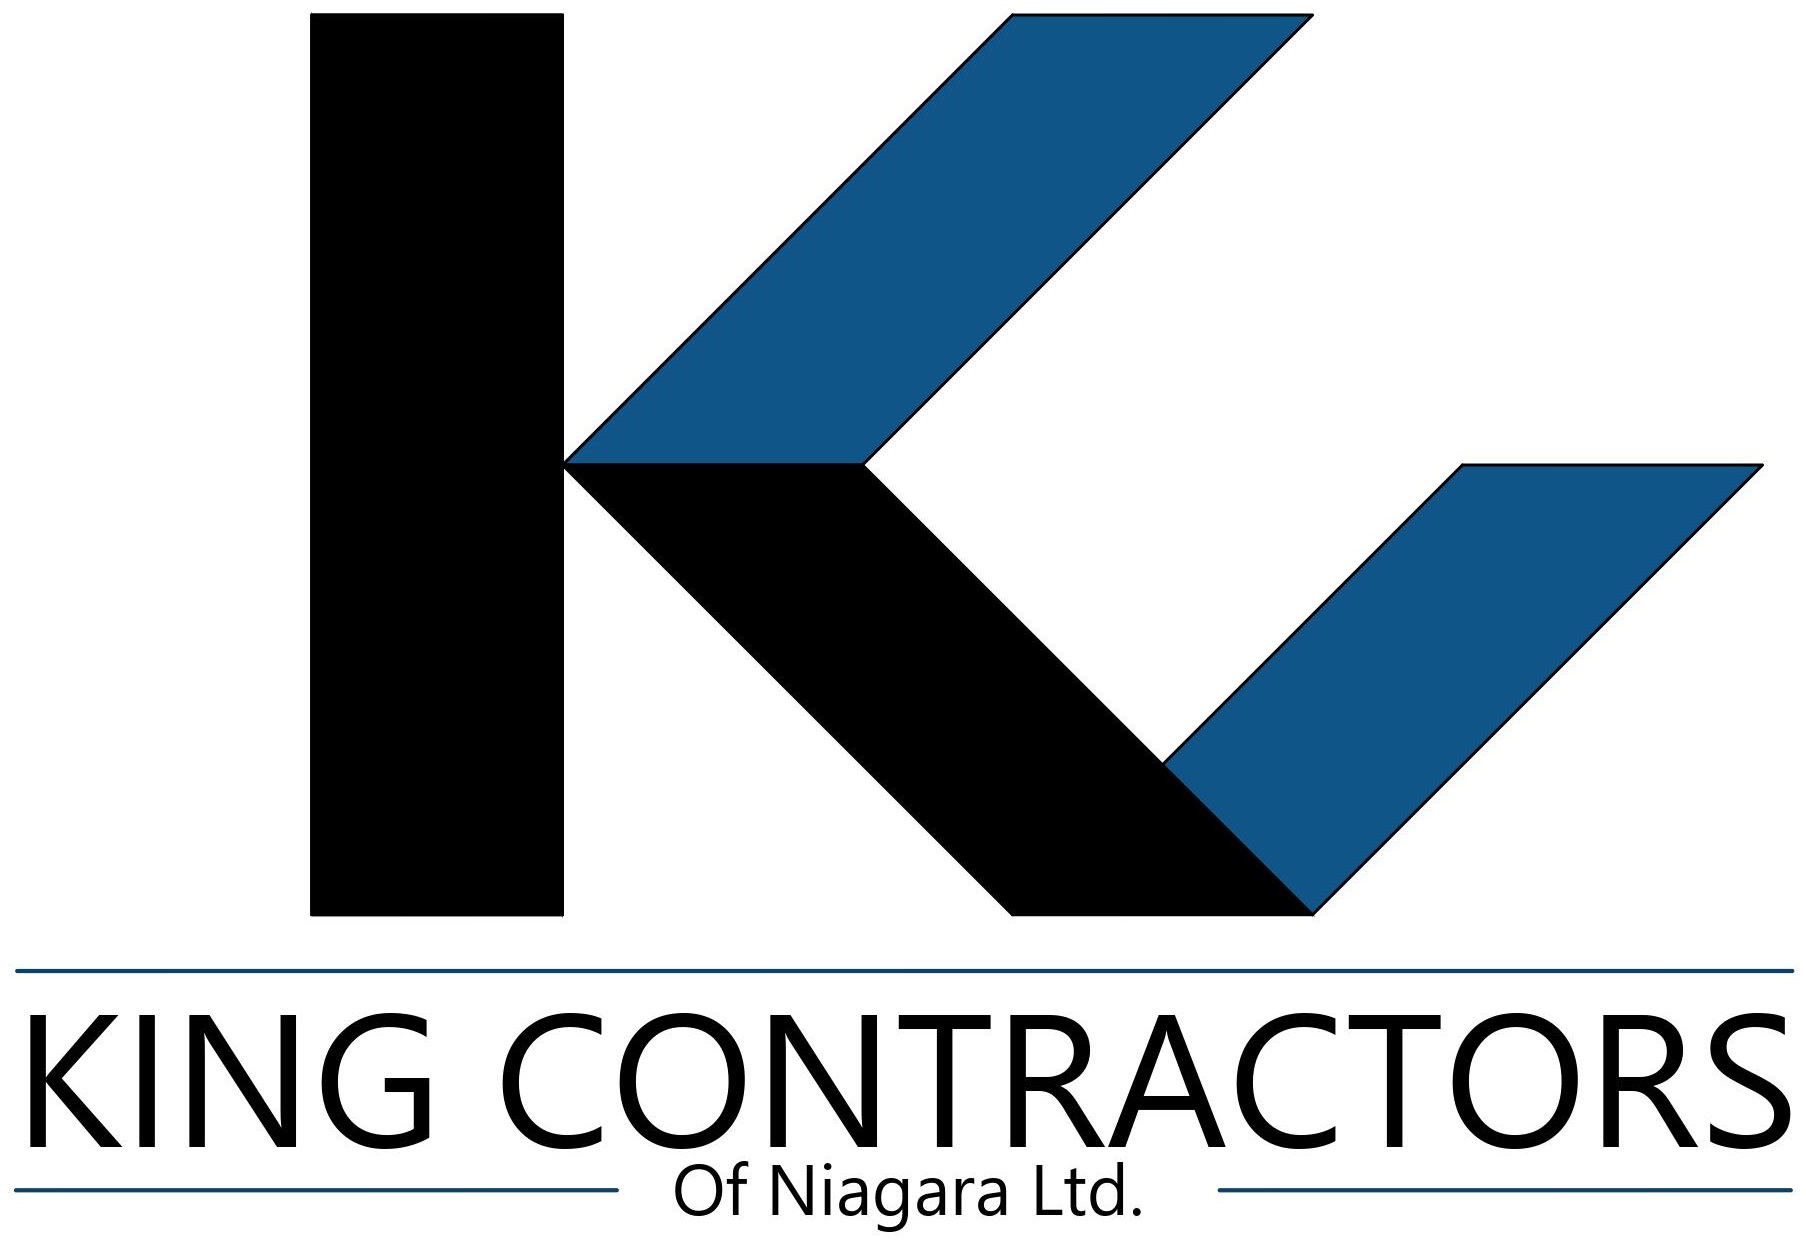 King Contractors of Niagara Ltd